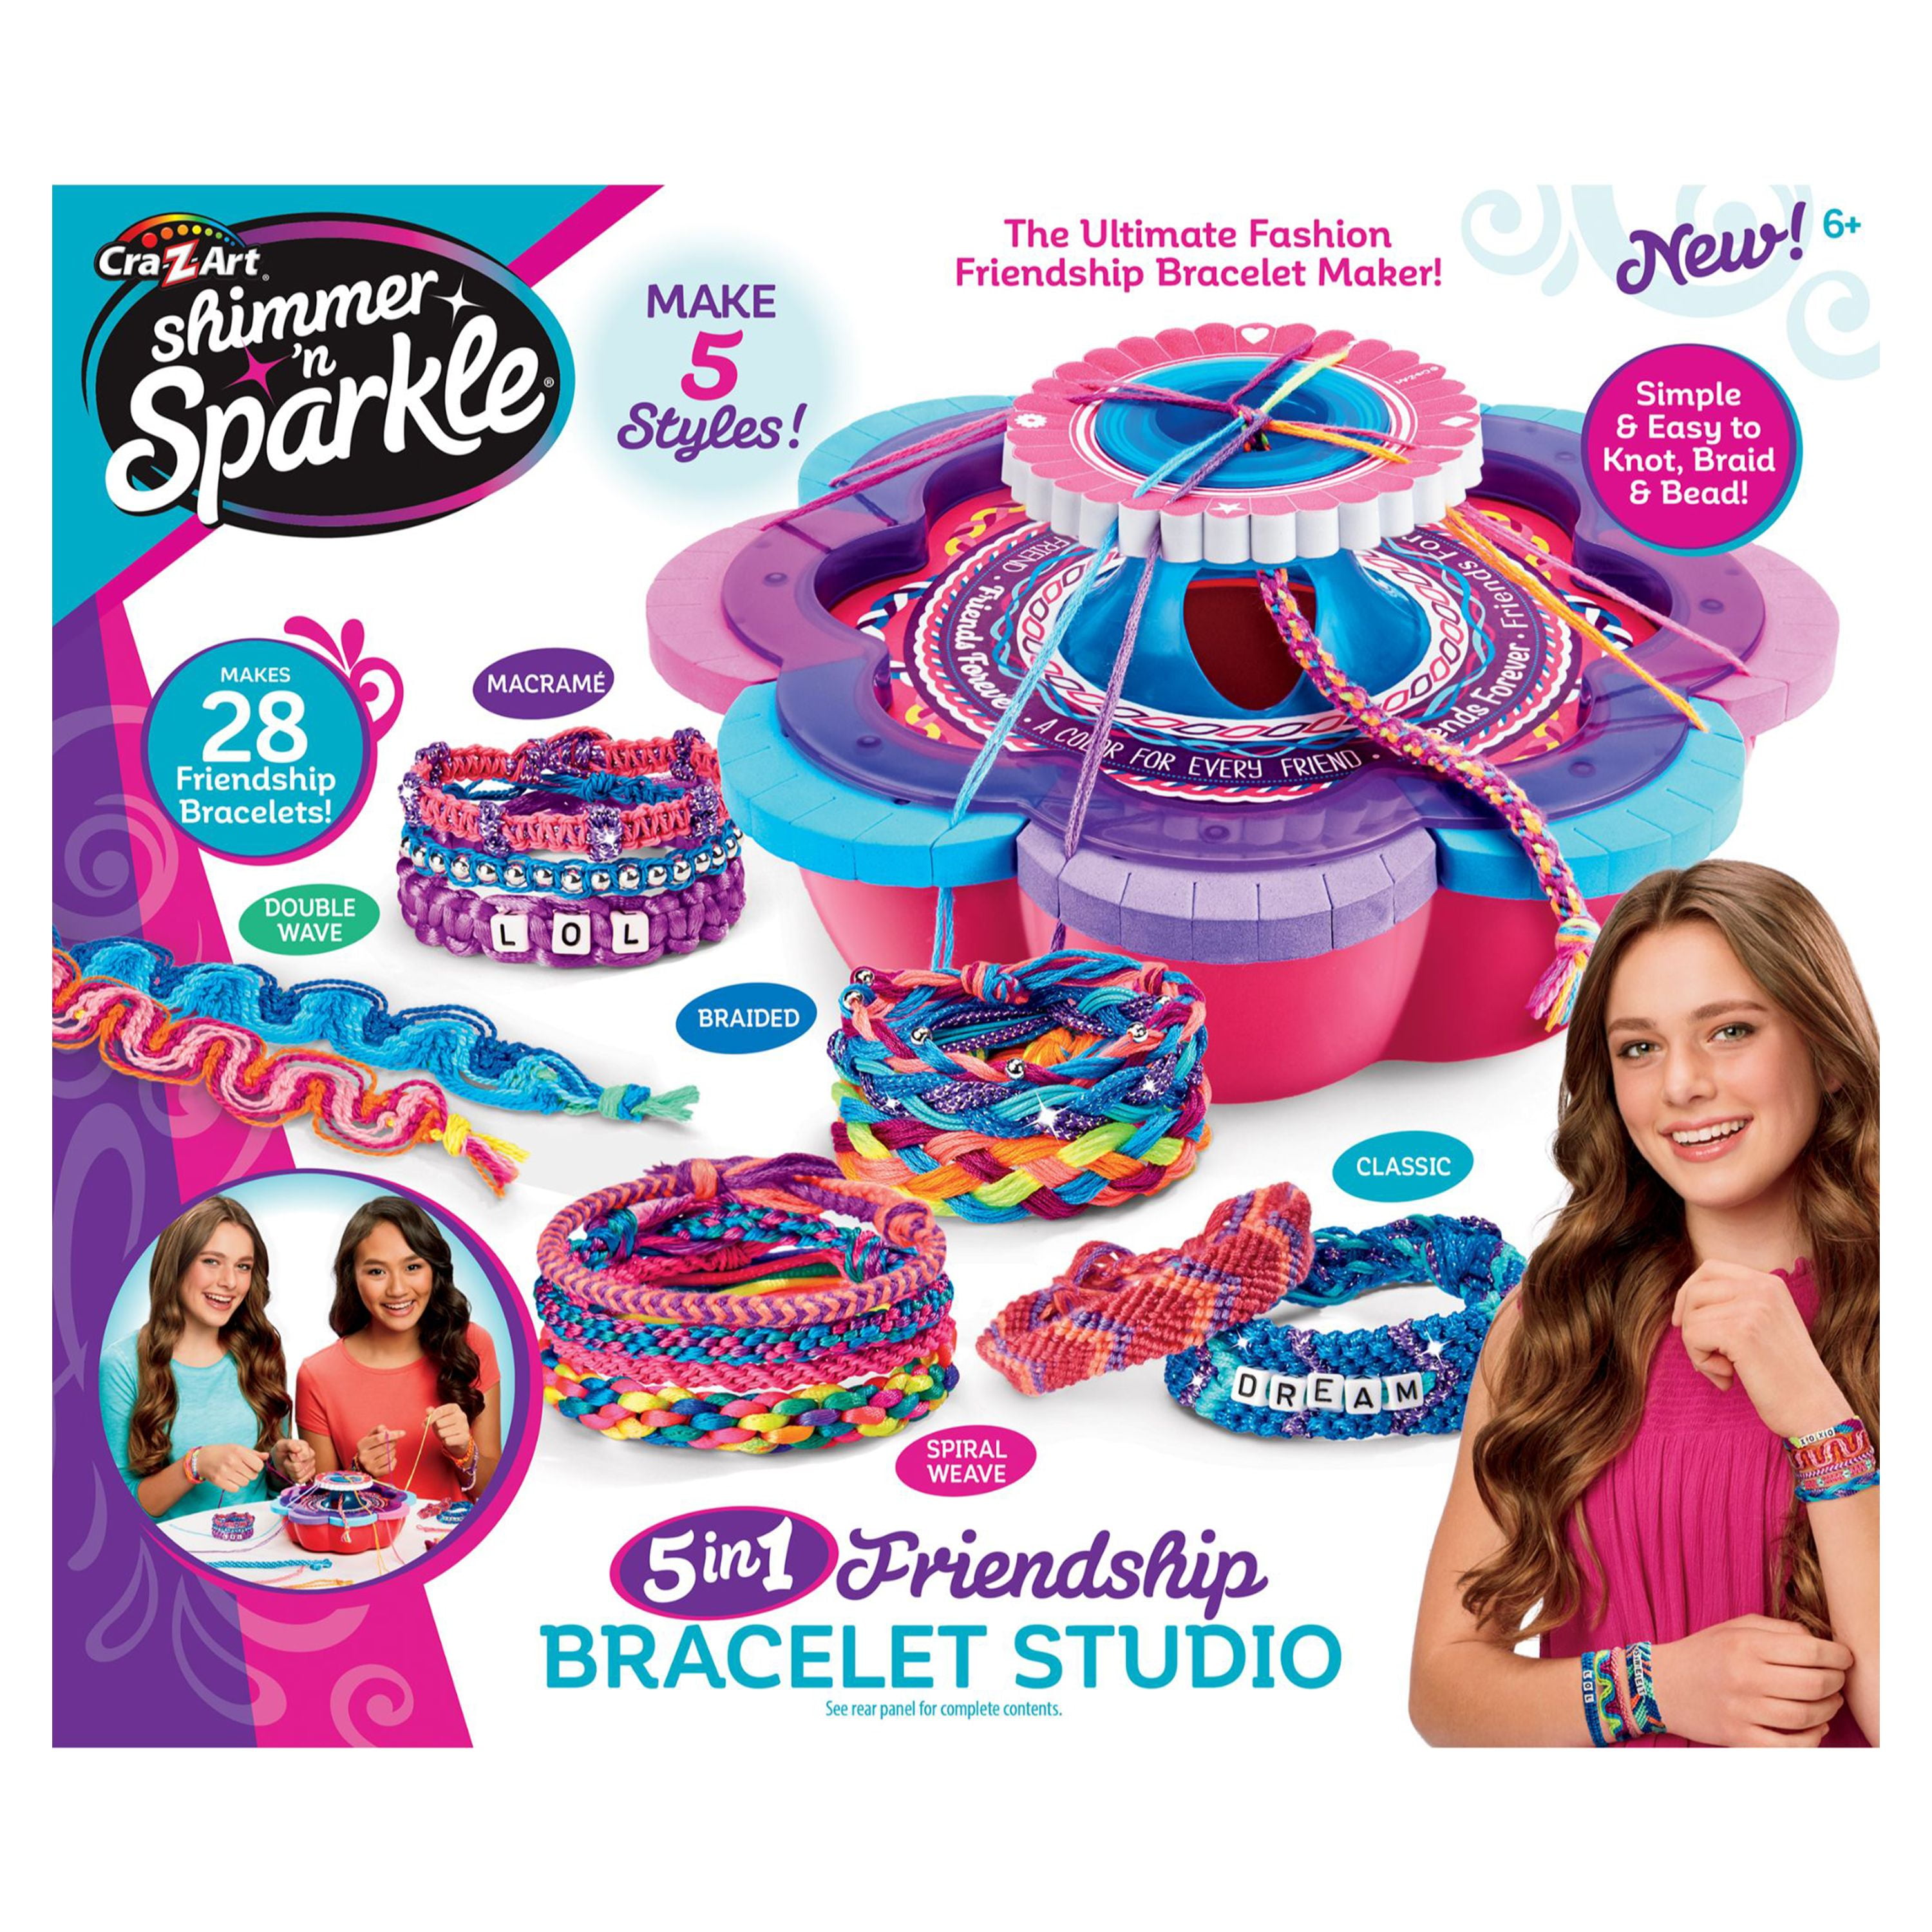 Ultimate friend s face maker. Браслет мэйкер новое. Shimmer’n Sparkle 5 in 1 Friendship Bracelet Studio от Cra-z-Art купить. Twist n Sparkle. CRAZART Shimmer Sparkle инструкция.